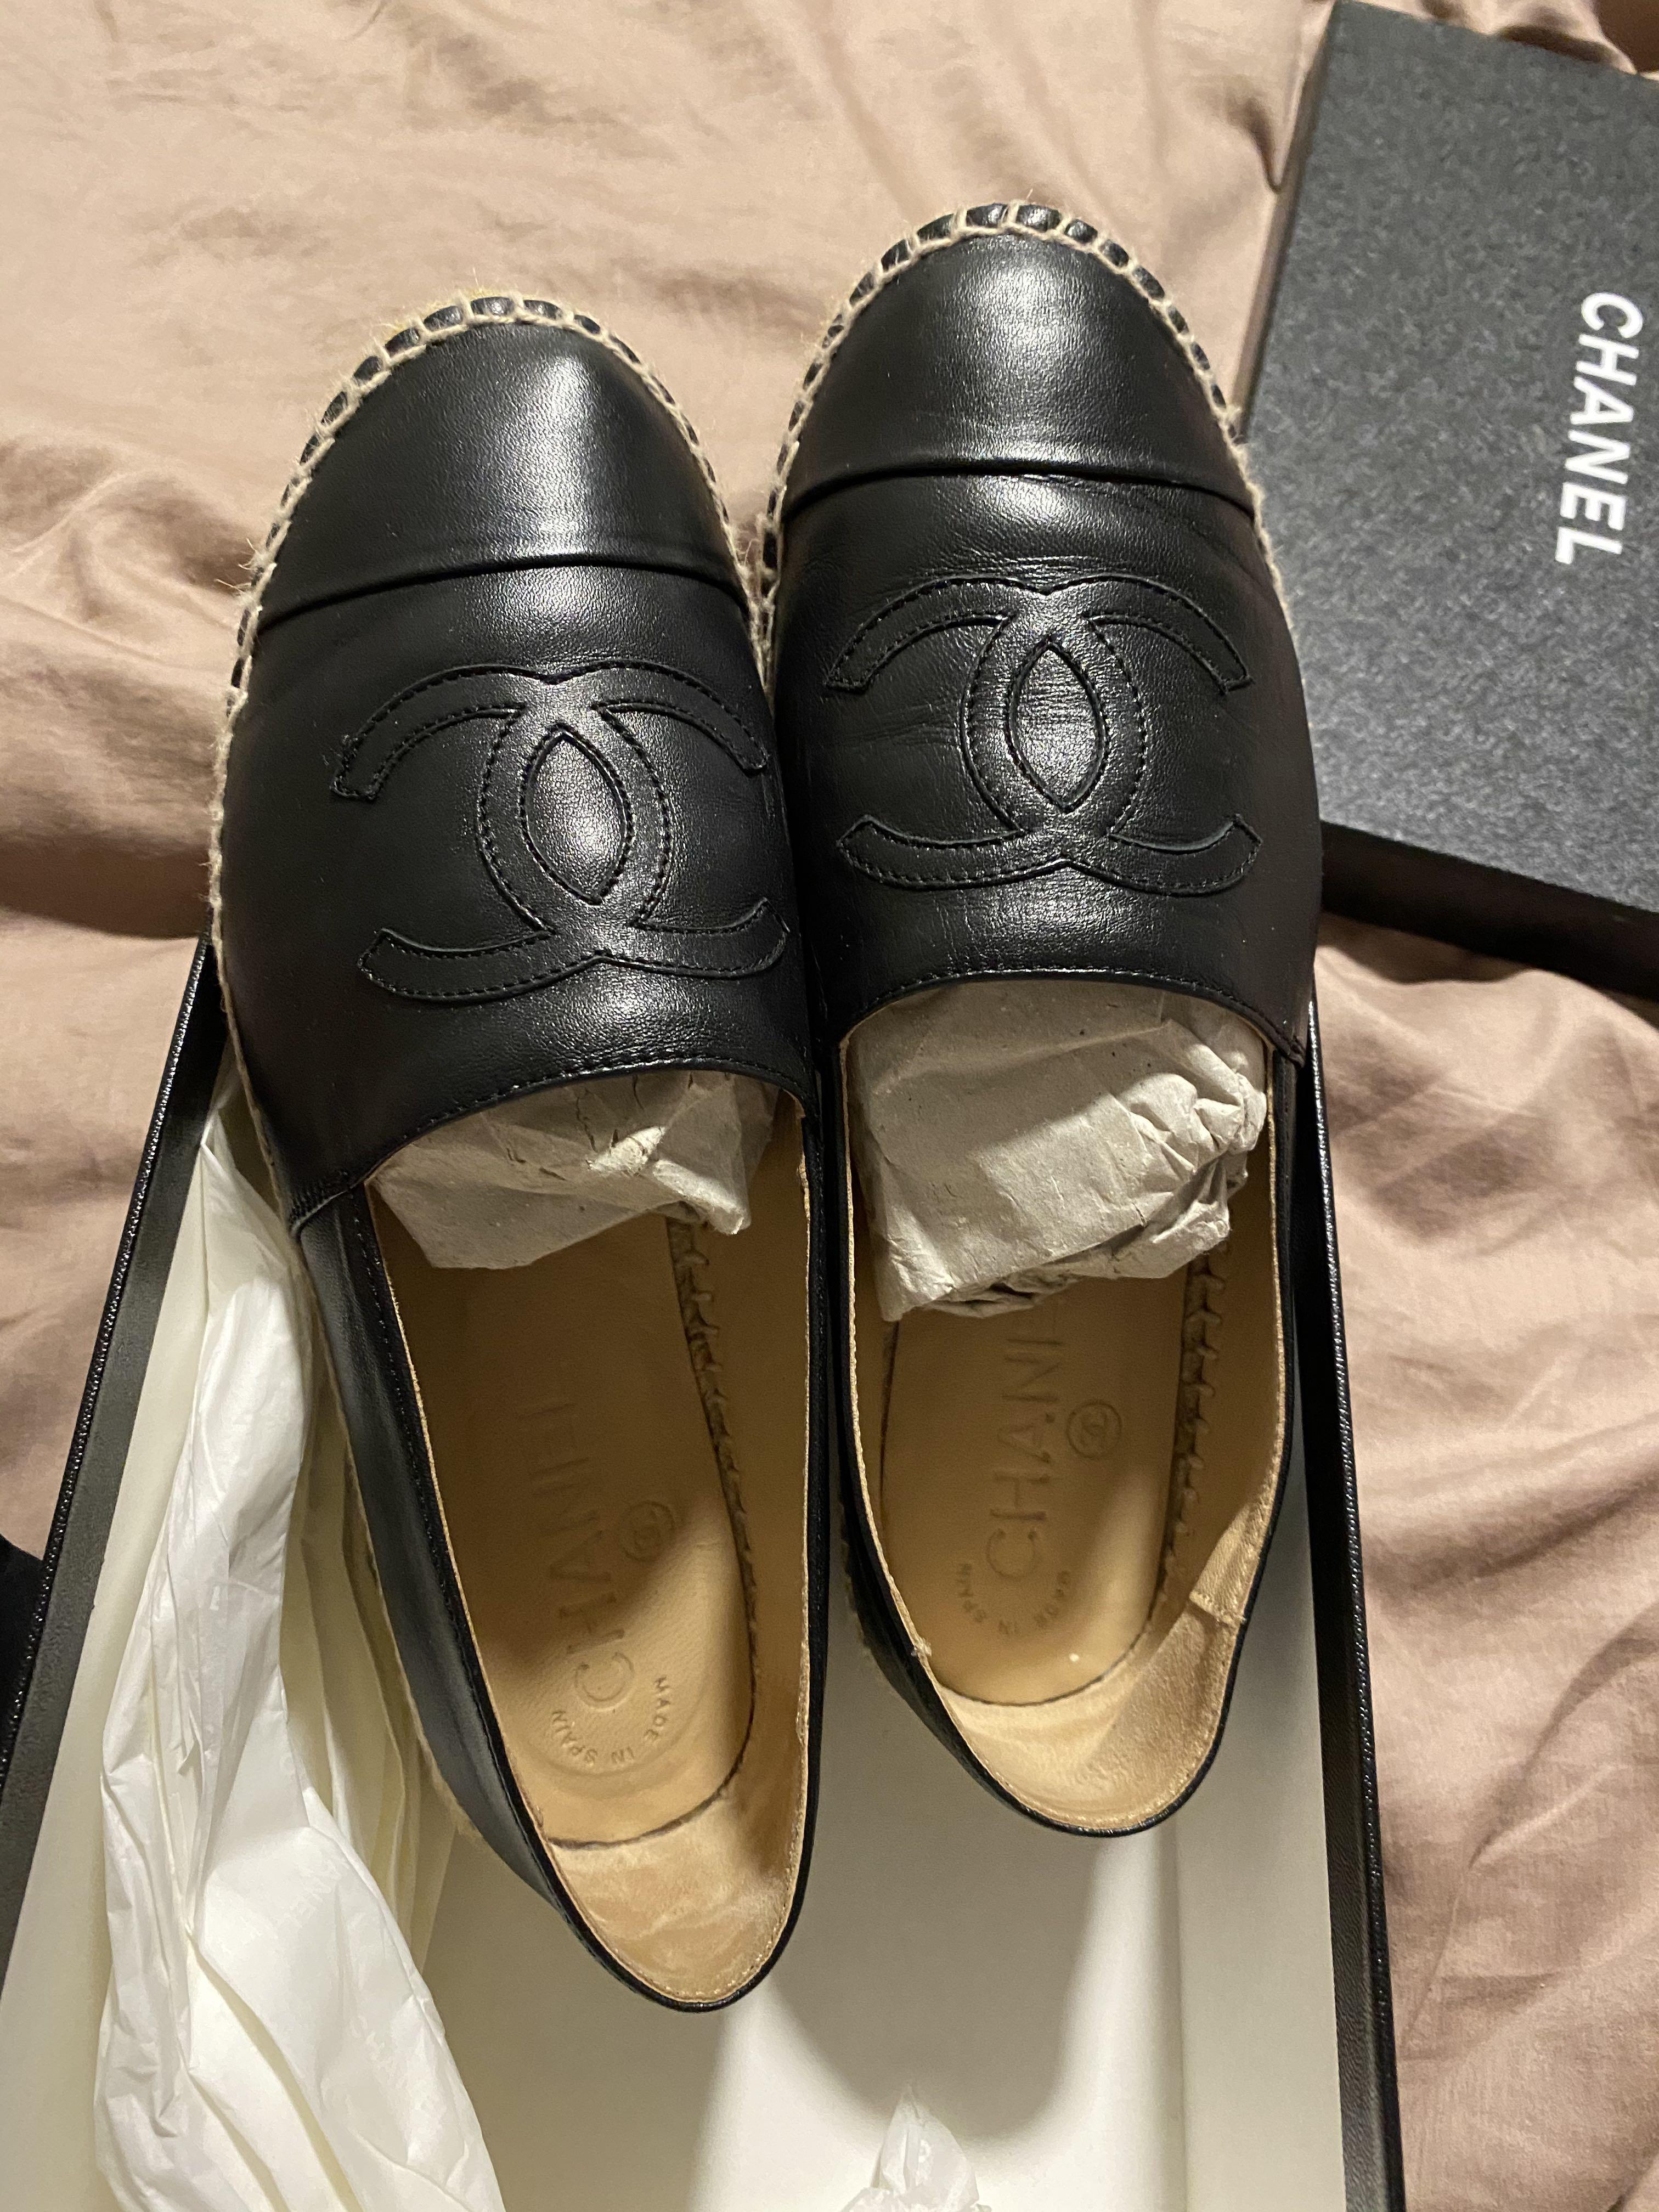 Chanel tweed Slip Shoes  Shop Omë